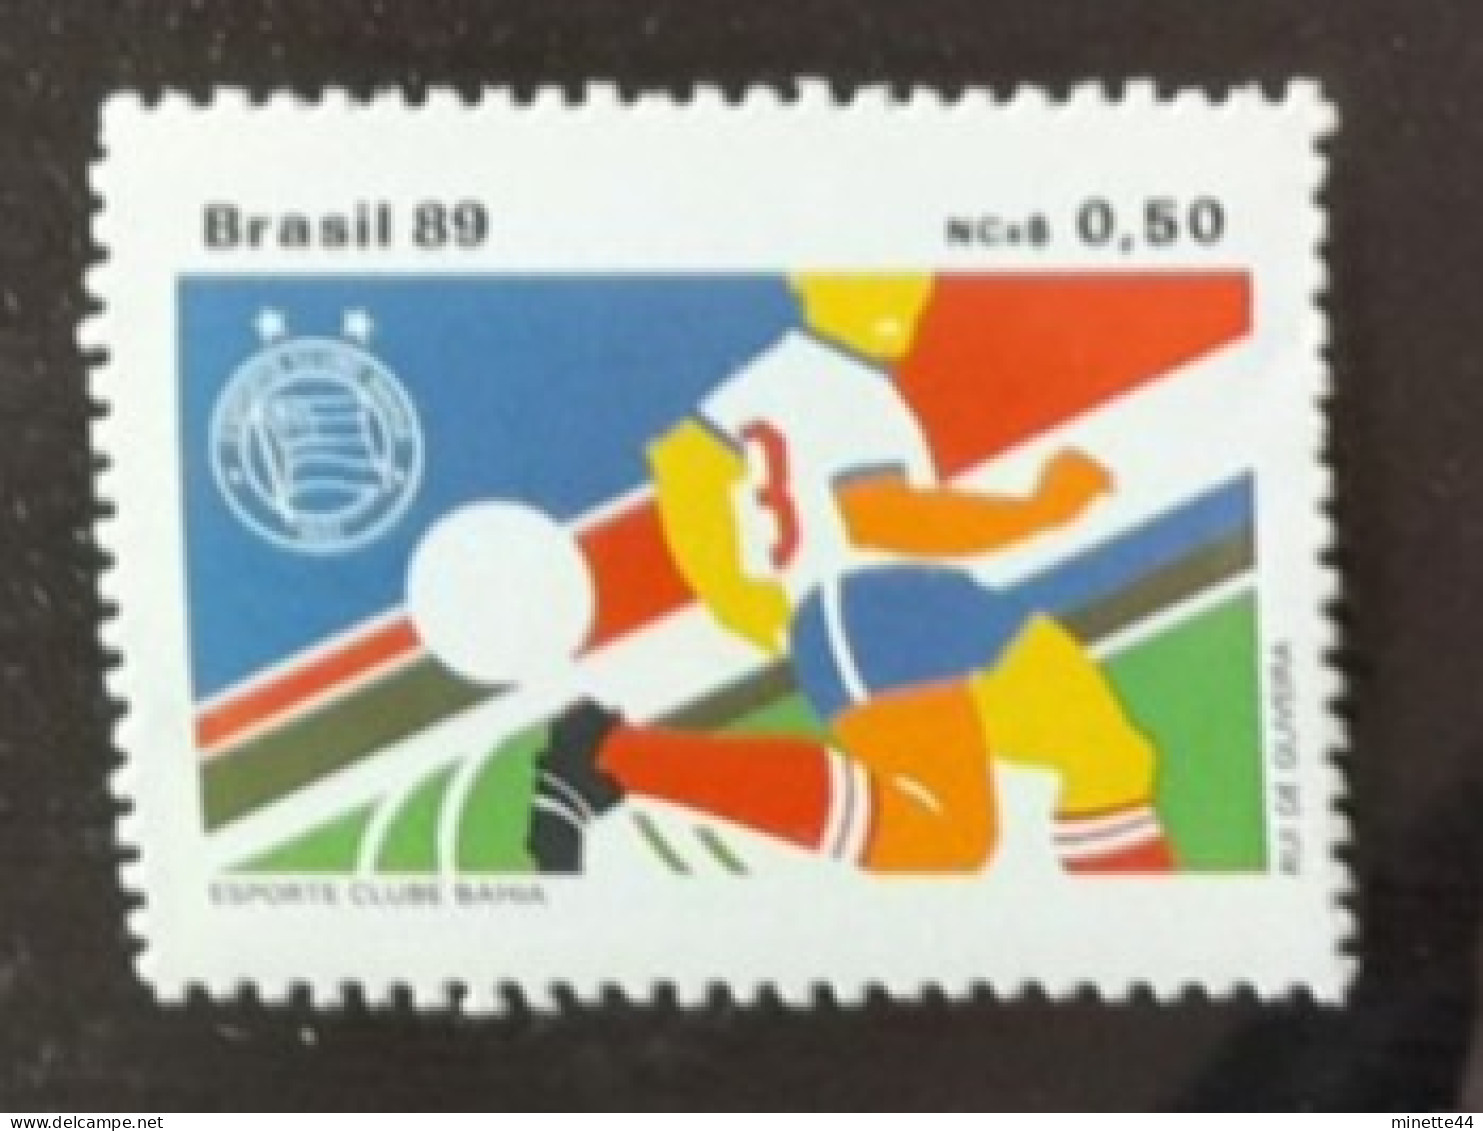 BRESIL BRASIL 1989  MNH**   FOOTBALL FUSSBALL SOCCER  CALCIO VOETBAL FUTBOL FUTEBOL FOOT - Unused Stamps